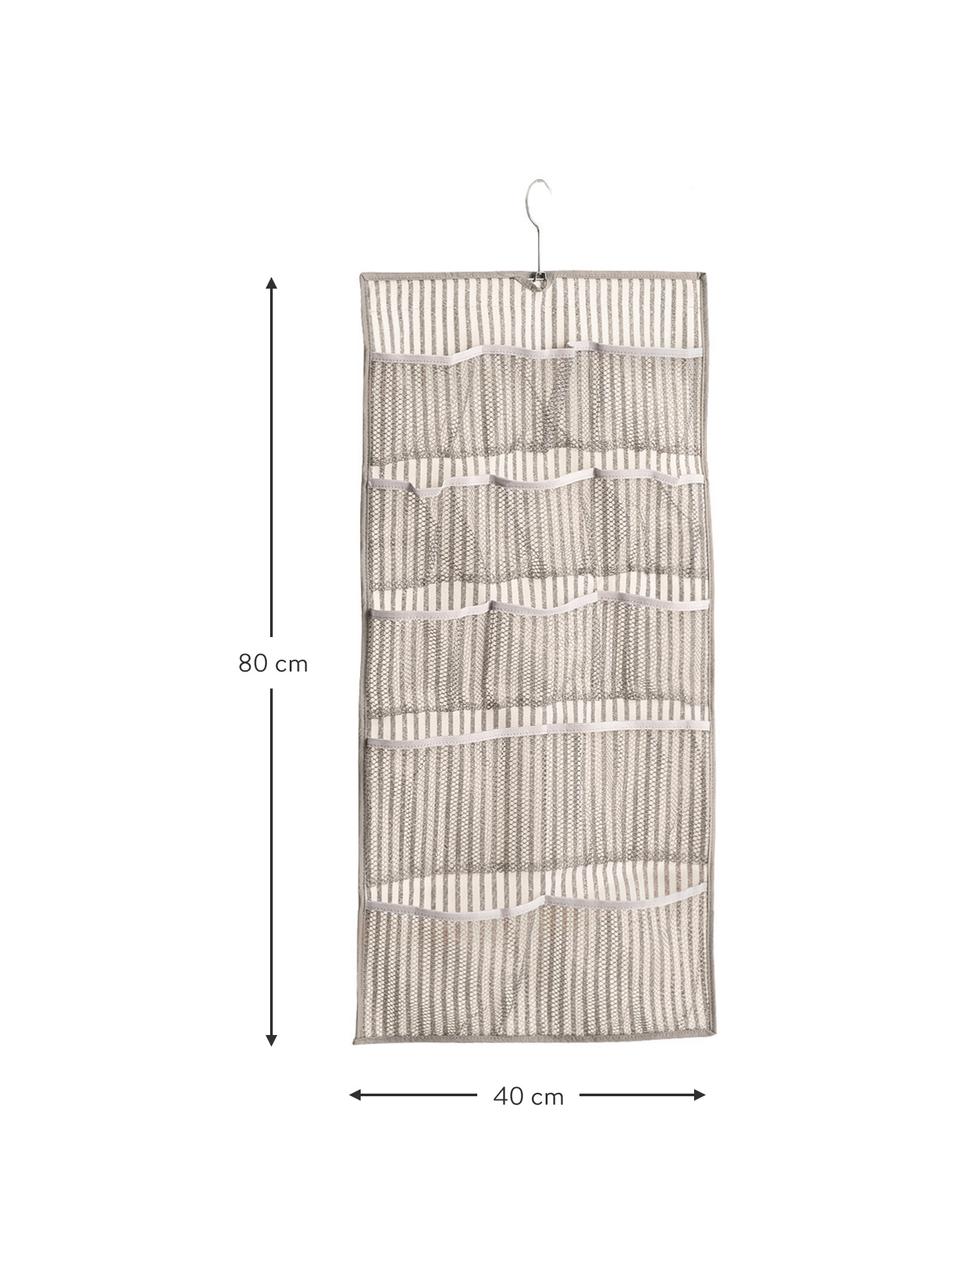 Hängender Schrank-Organizer Stripes mit 12 Fächern, 100% Polypropylen (Vlies), Beige, Cremeweiß, 40 x 80 cm